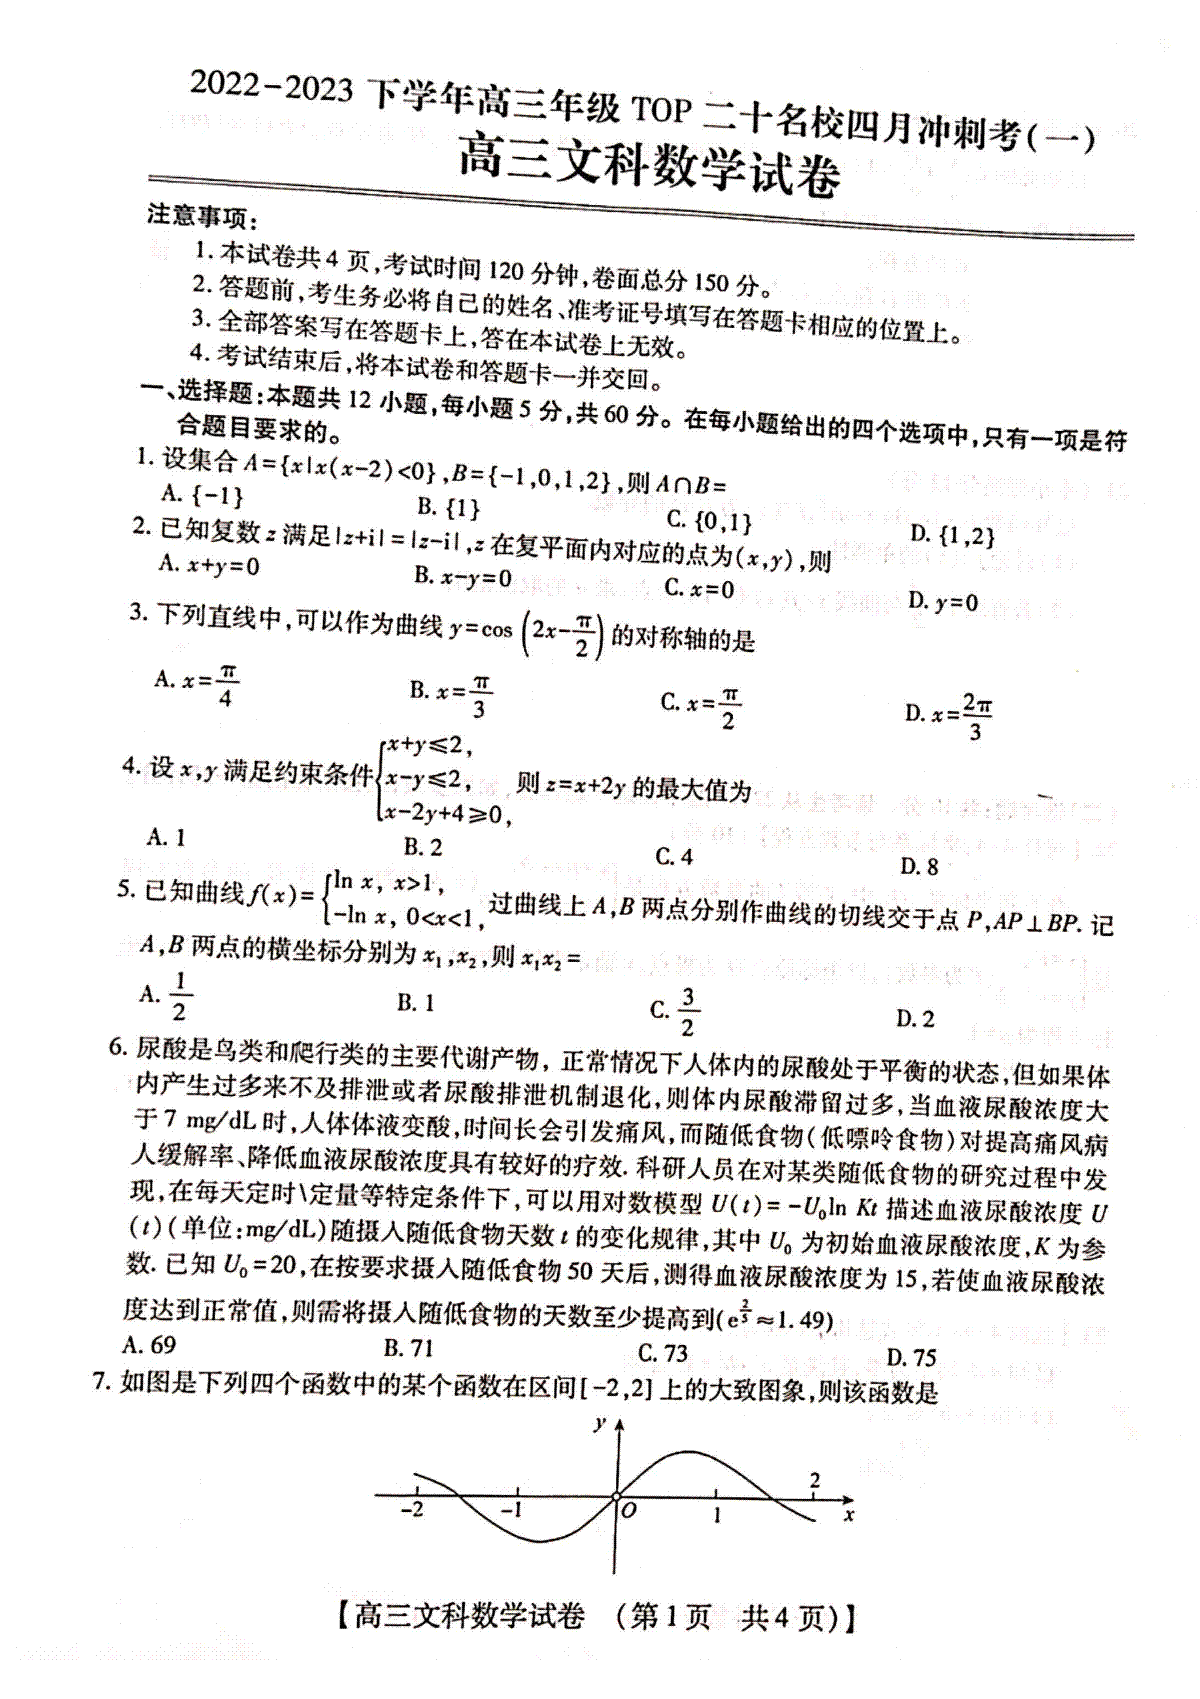 河南省2022-2023下学年高三年级TOP20二十名校四月冲刺考（一）高三文科数学试卷